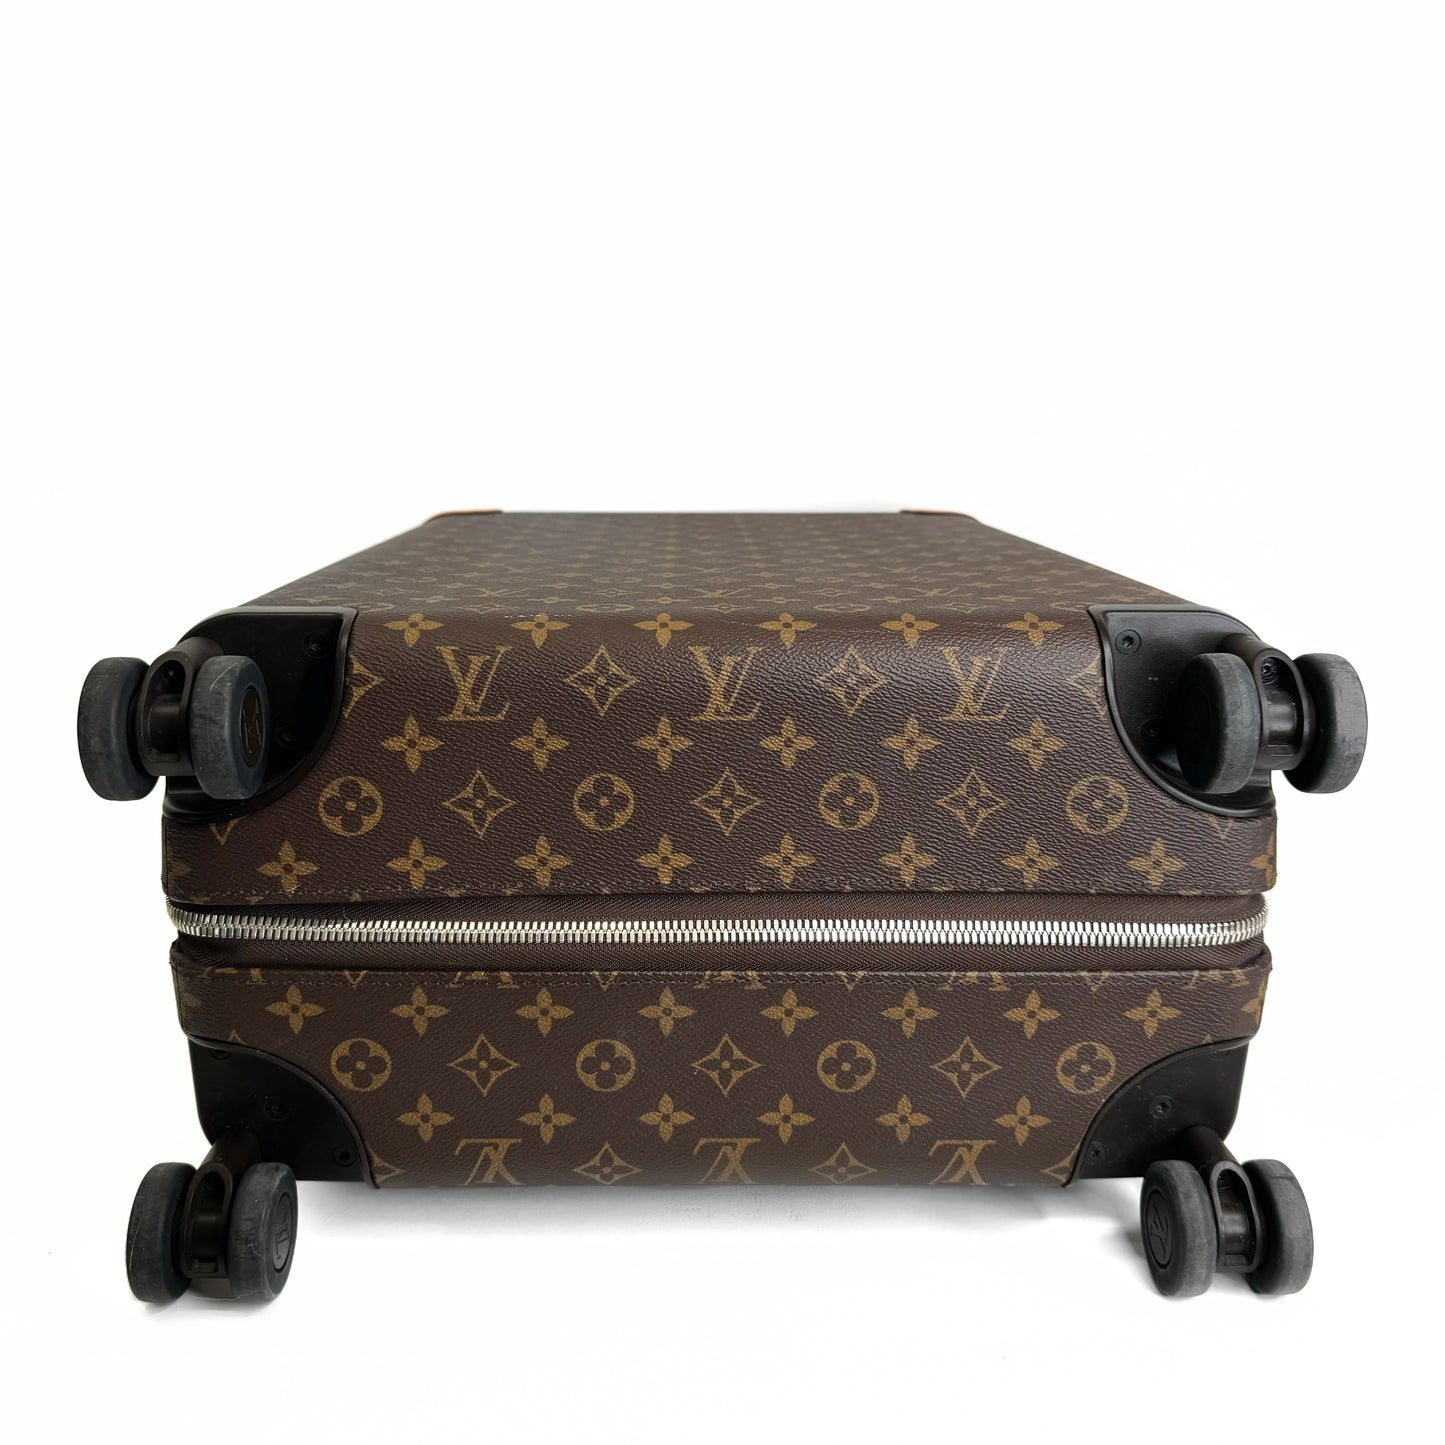 Louis Vuitton Horizon 55 Rolling Luggage